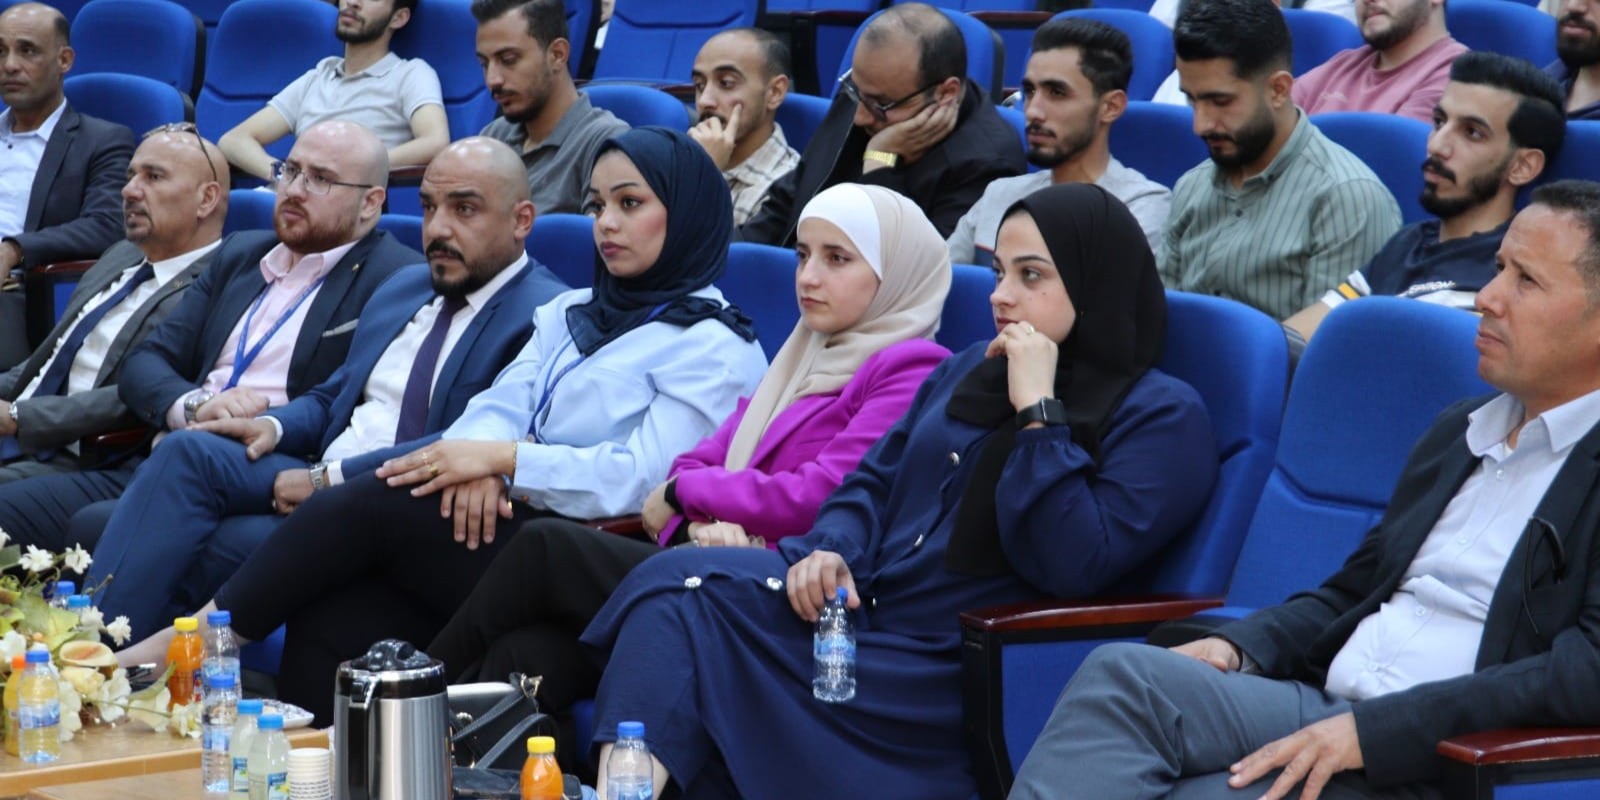  جلسة تثقيفية بعنوان نحو شباب مثقف ماليًا في جامعة الحسين بن طلال.